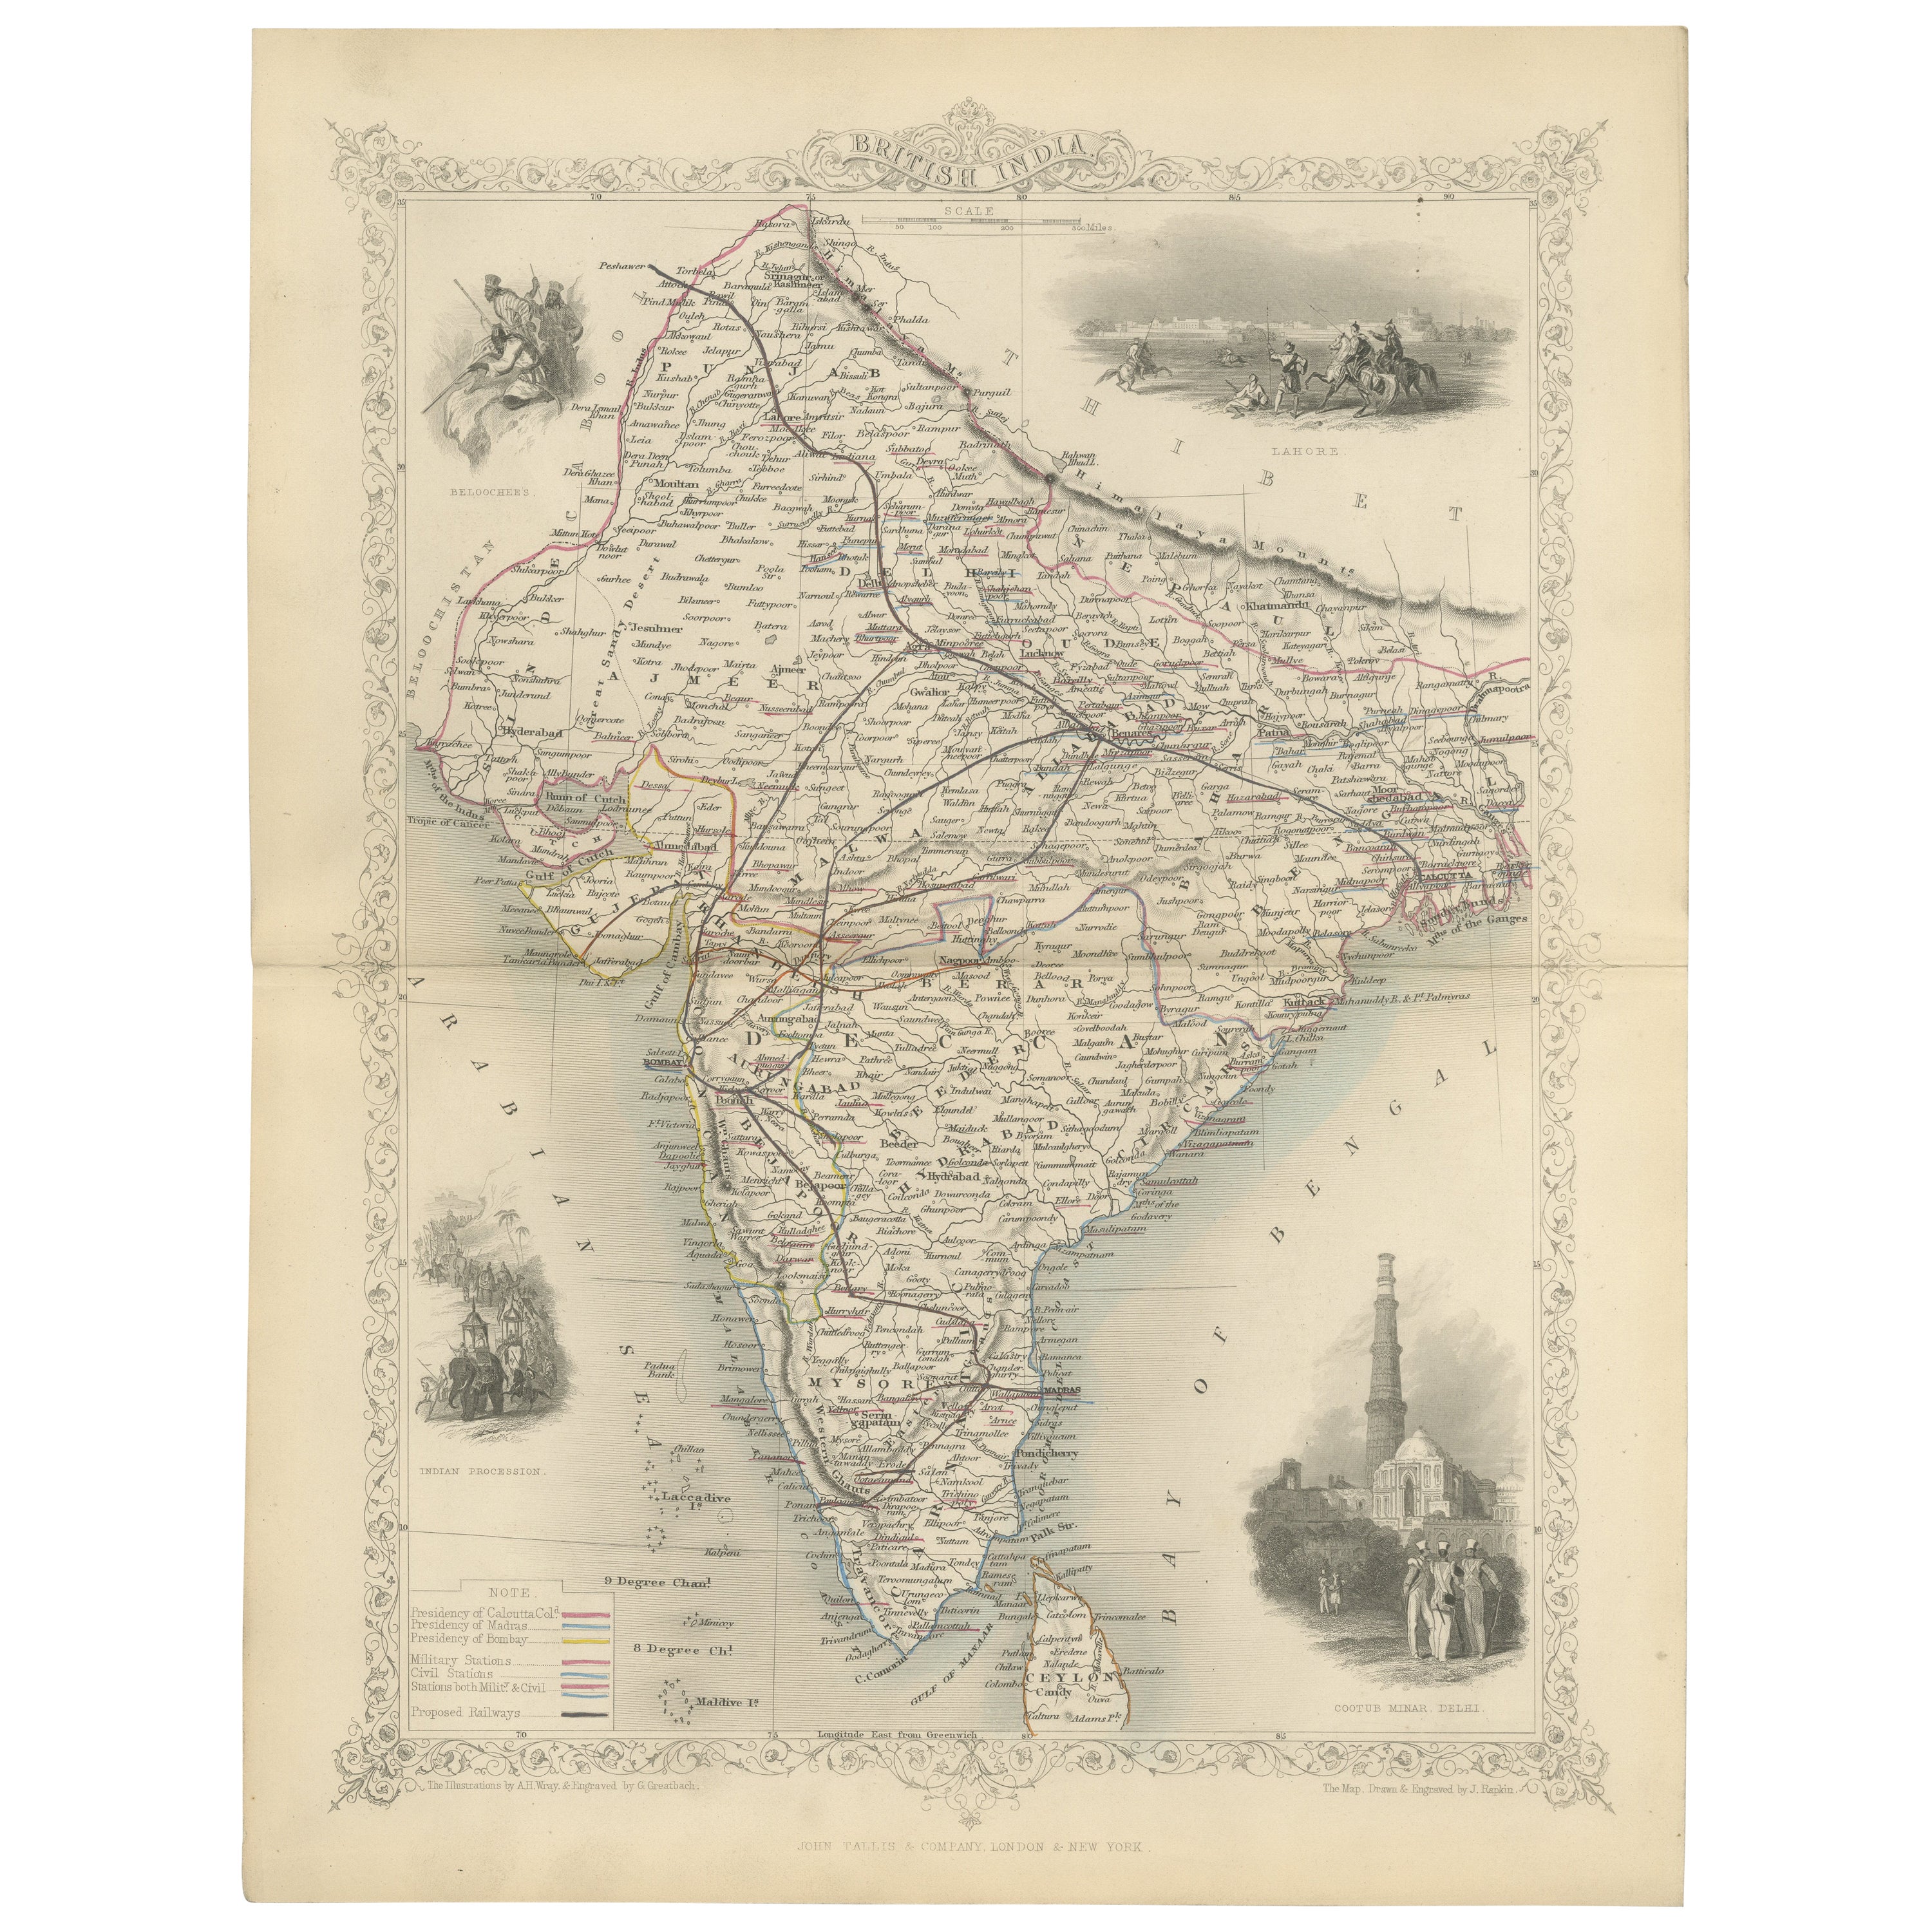 Carte décorative de l'Inde du milieu du XIXe siècle avec des vignettes culturelles et naturelles